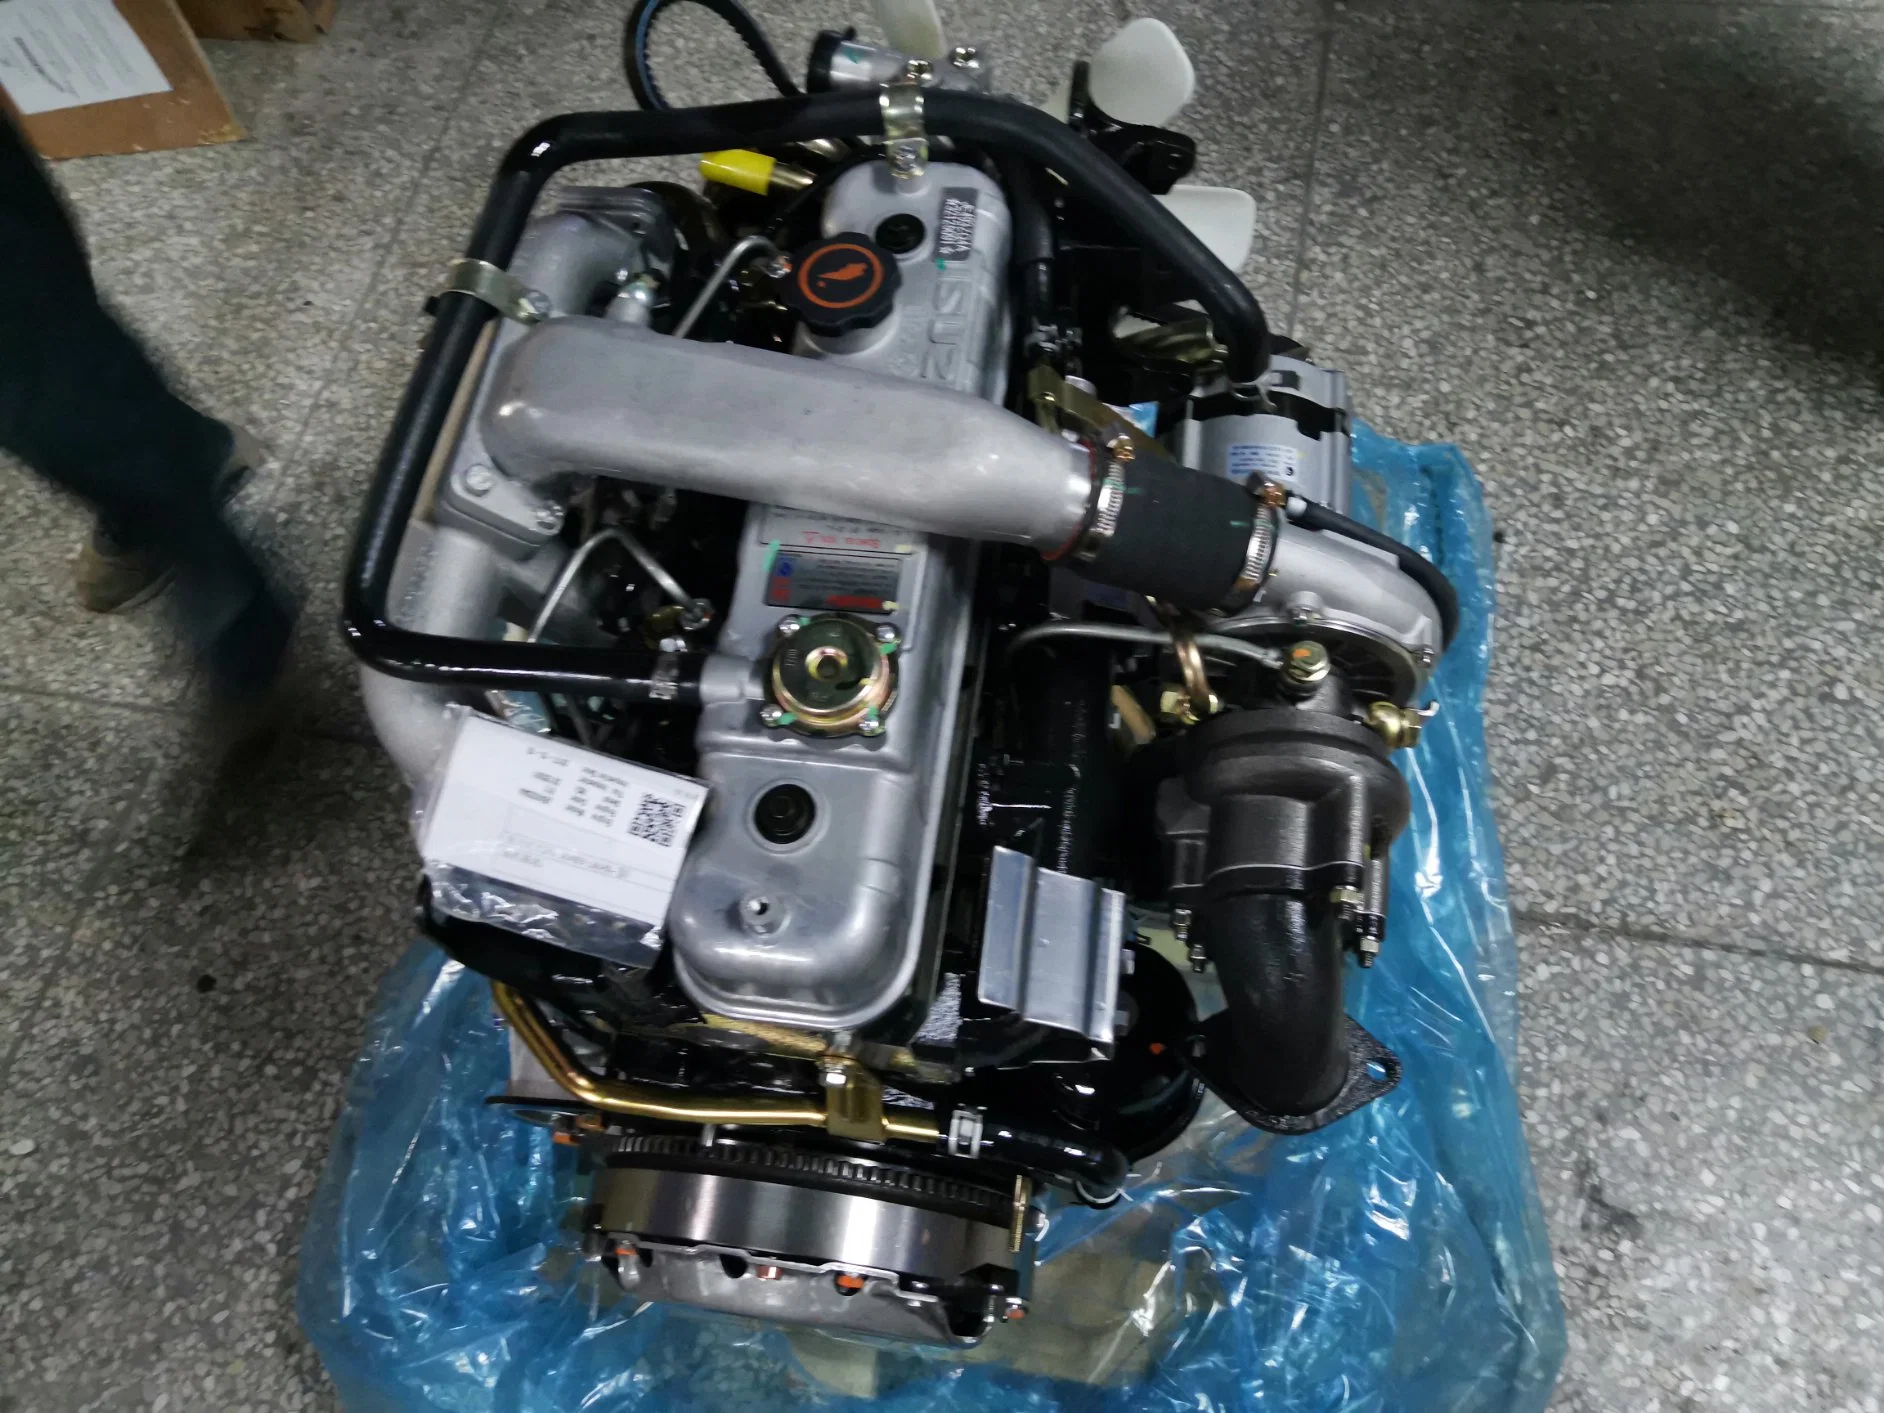 Dieselmotor/LKW-Motor/Wasserkühlung Engine4 Zylinder 68kw 4jb1 /4jb1t Für LKW SUV Mairne Diesel Motor Boot Motor Motor für Versand